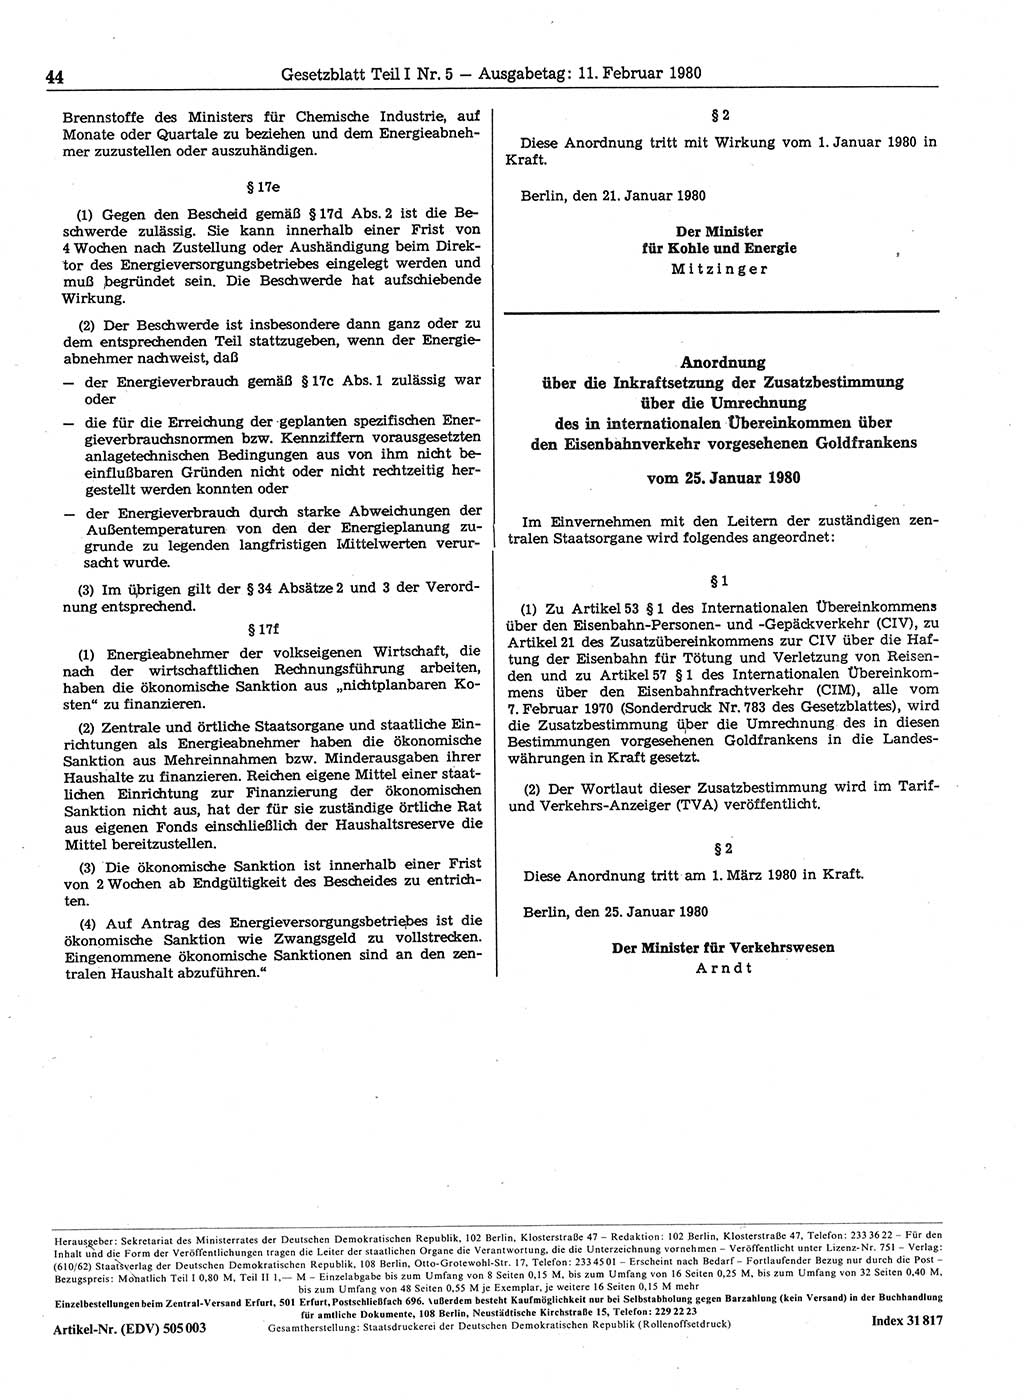 Gesetzblatt (GBl.) der Deutschen Demokratischen Republik (DDR) Teil Ⅰ 1980, Seite 44 (GBl. DDR Ⅰ 1980, S. 44)